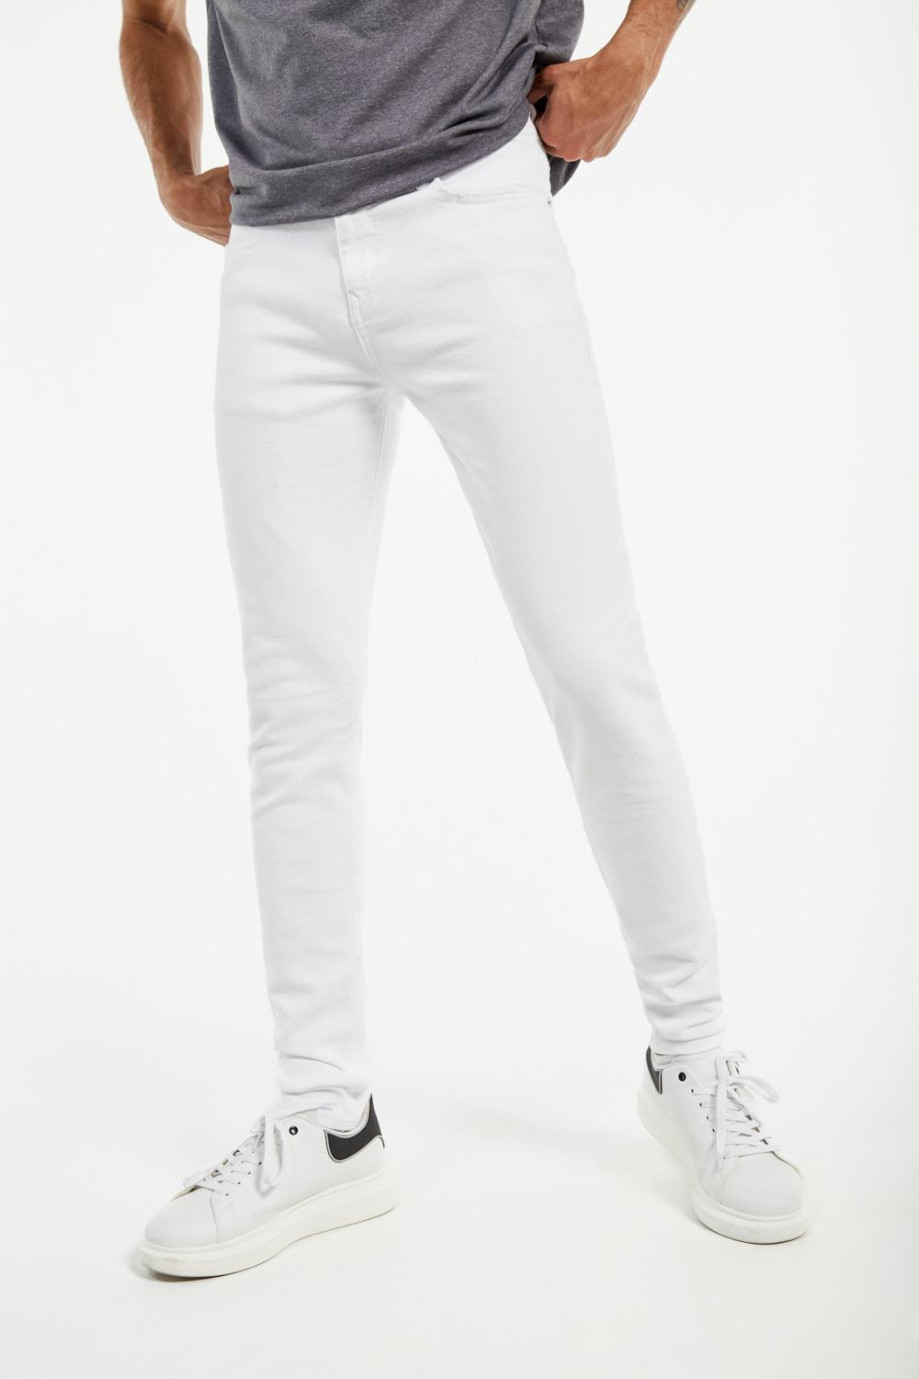 Jean súper skinny blanco con bolsillos funcionales y tiro bajo